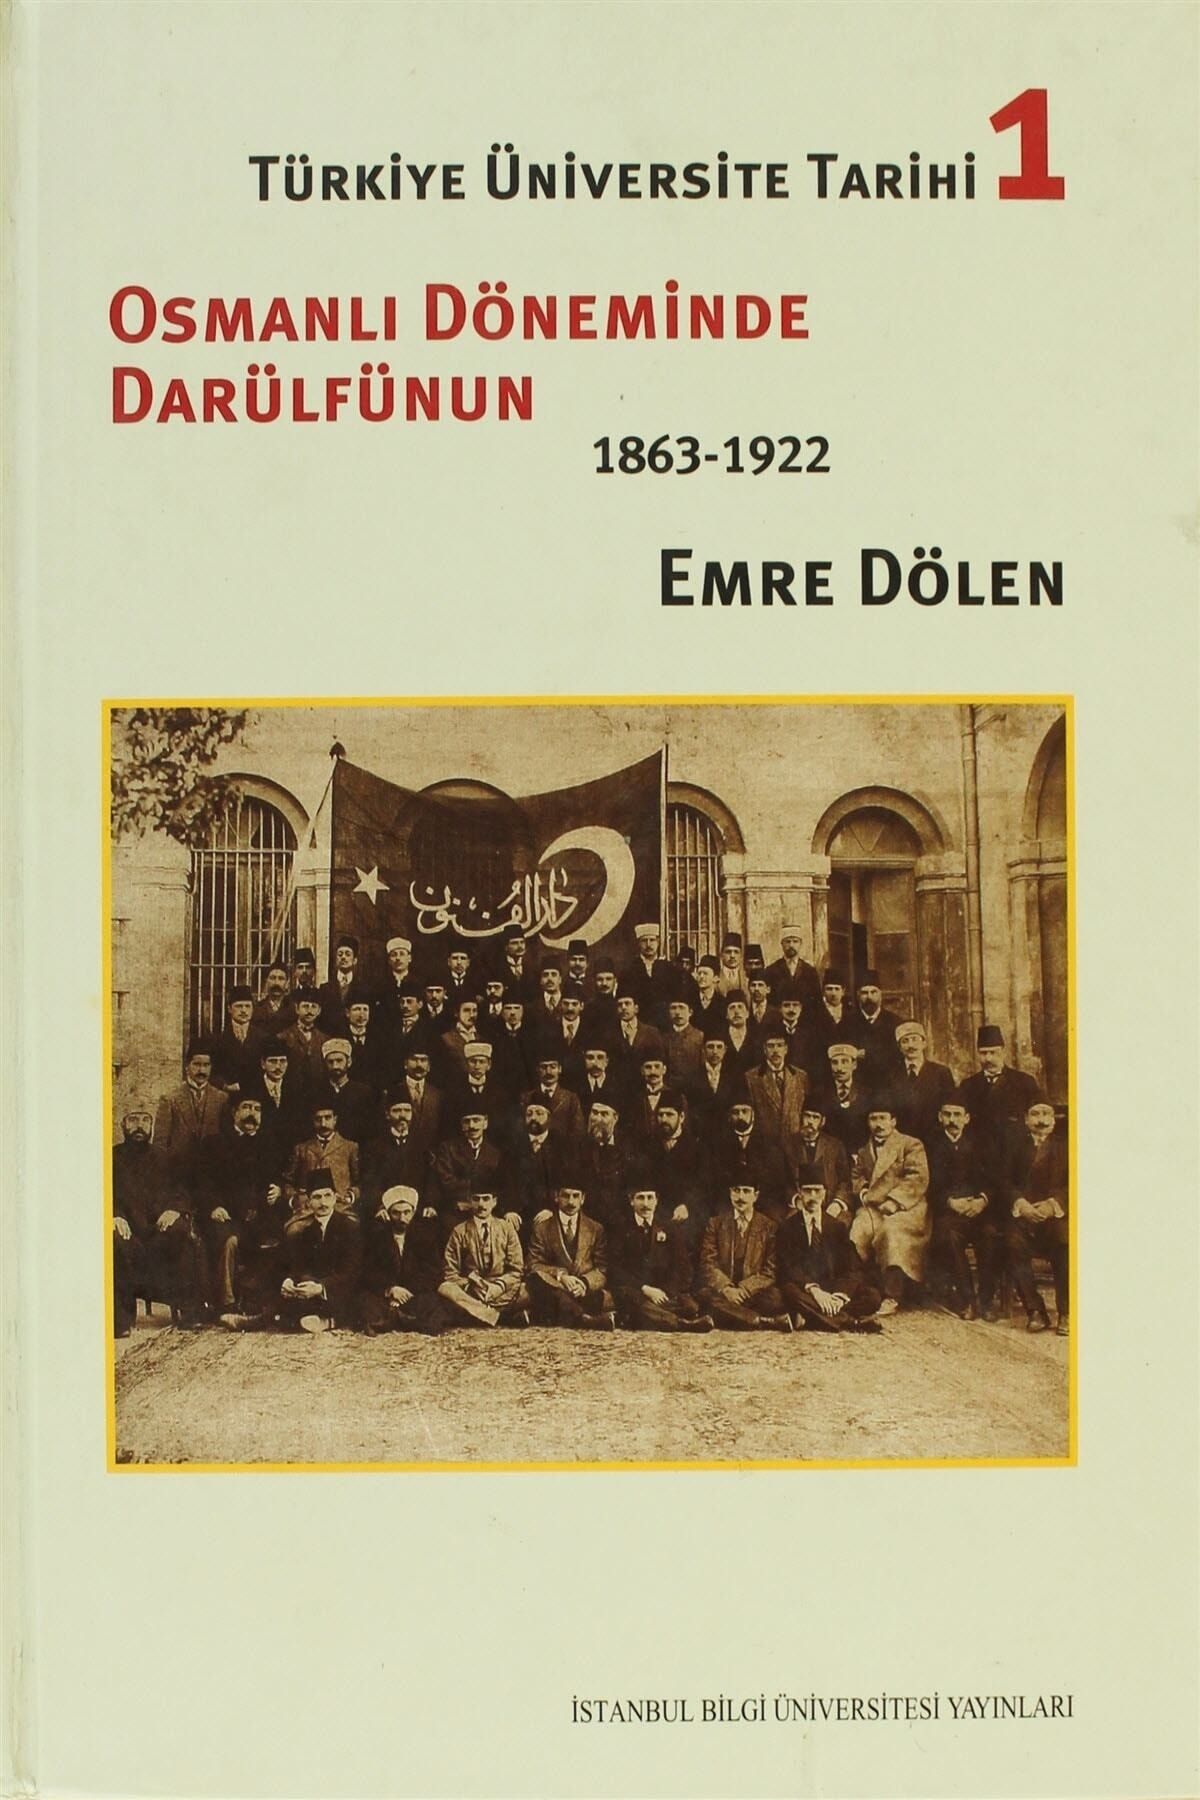 İstanbul Bilgi Üniversitesi Yayınları Türkiye Üniversite Tarihi 1 - Osmanlı Döneminde Darülfünun (1863-1922)